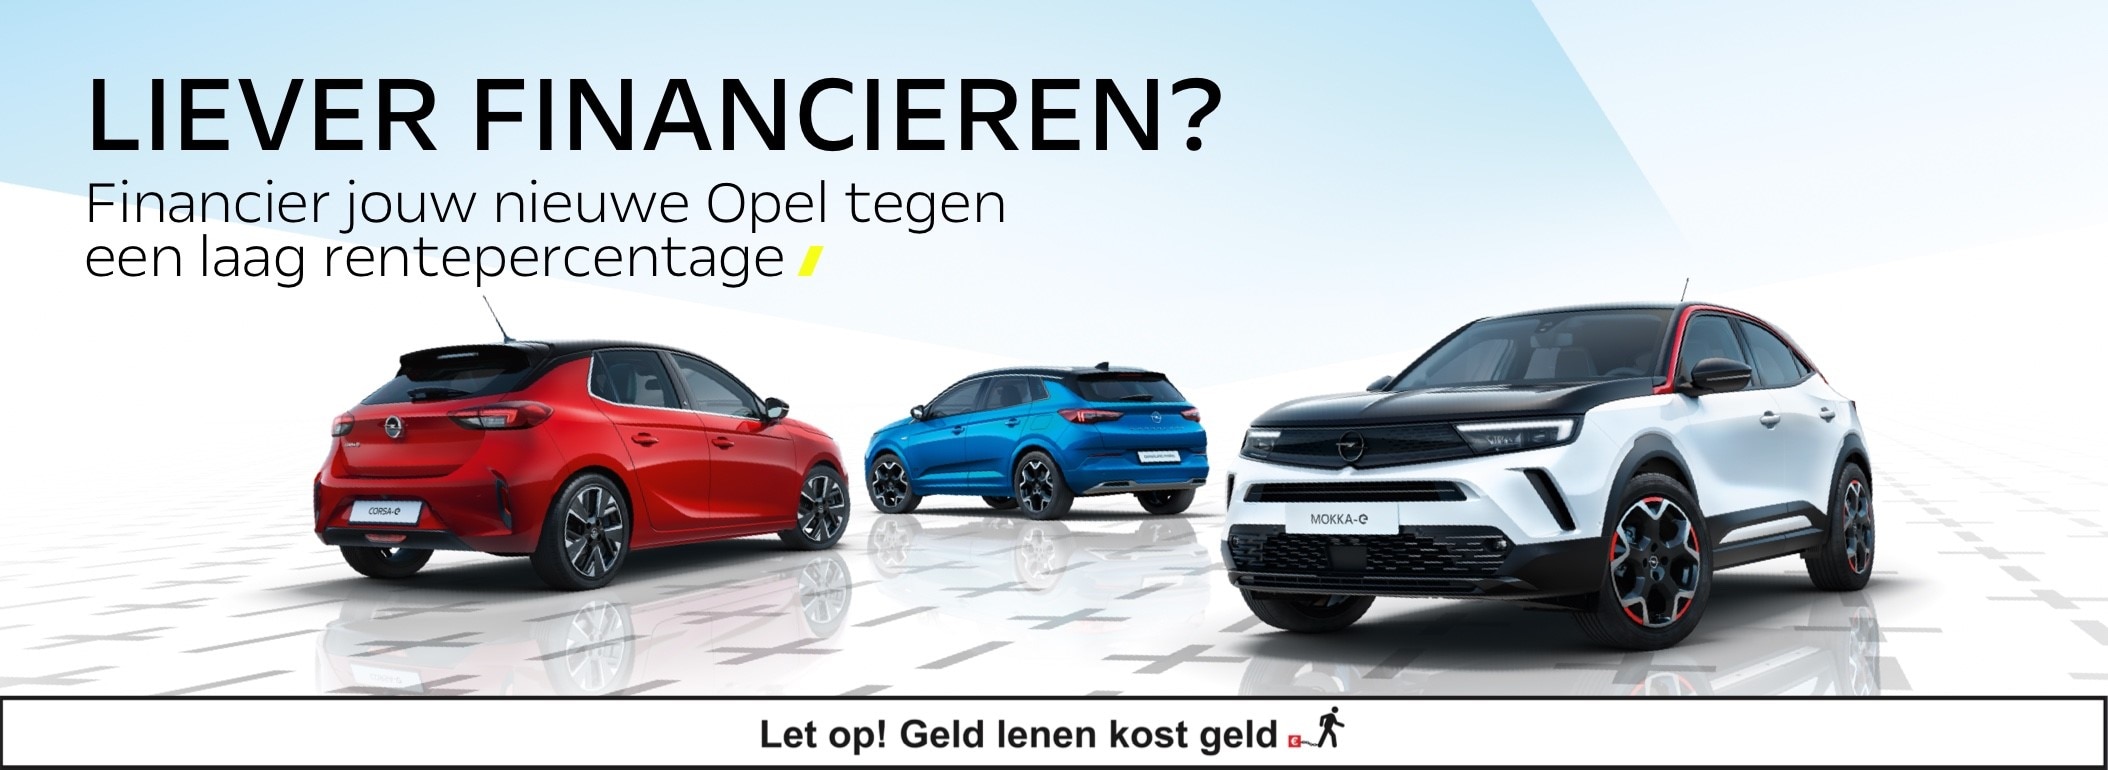 Opel financieren